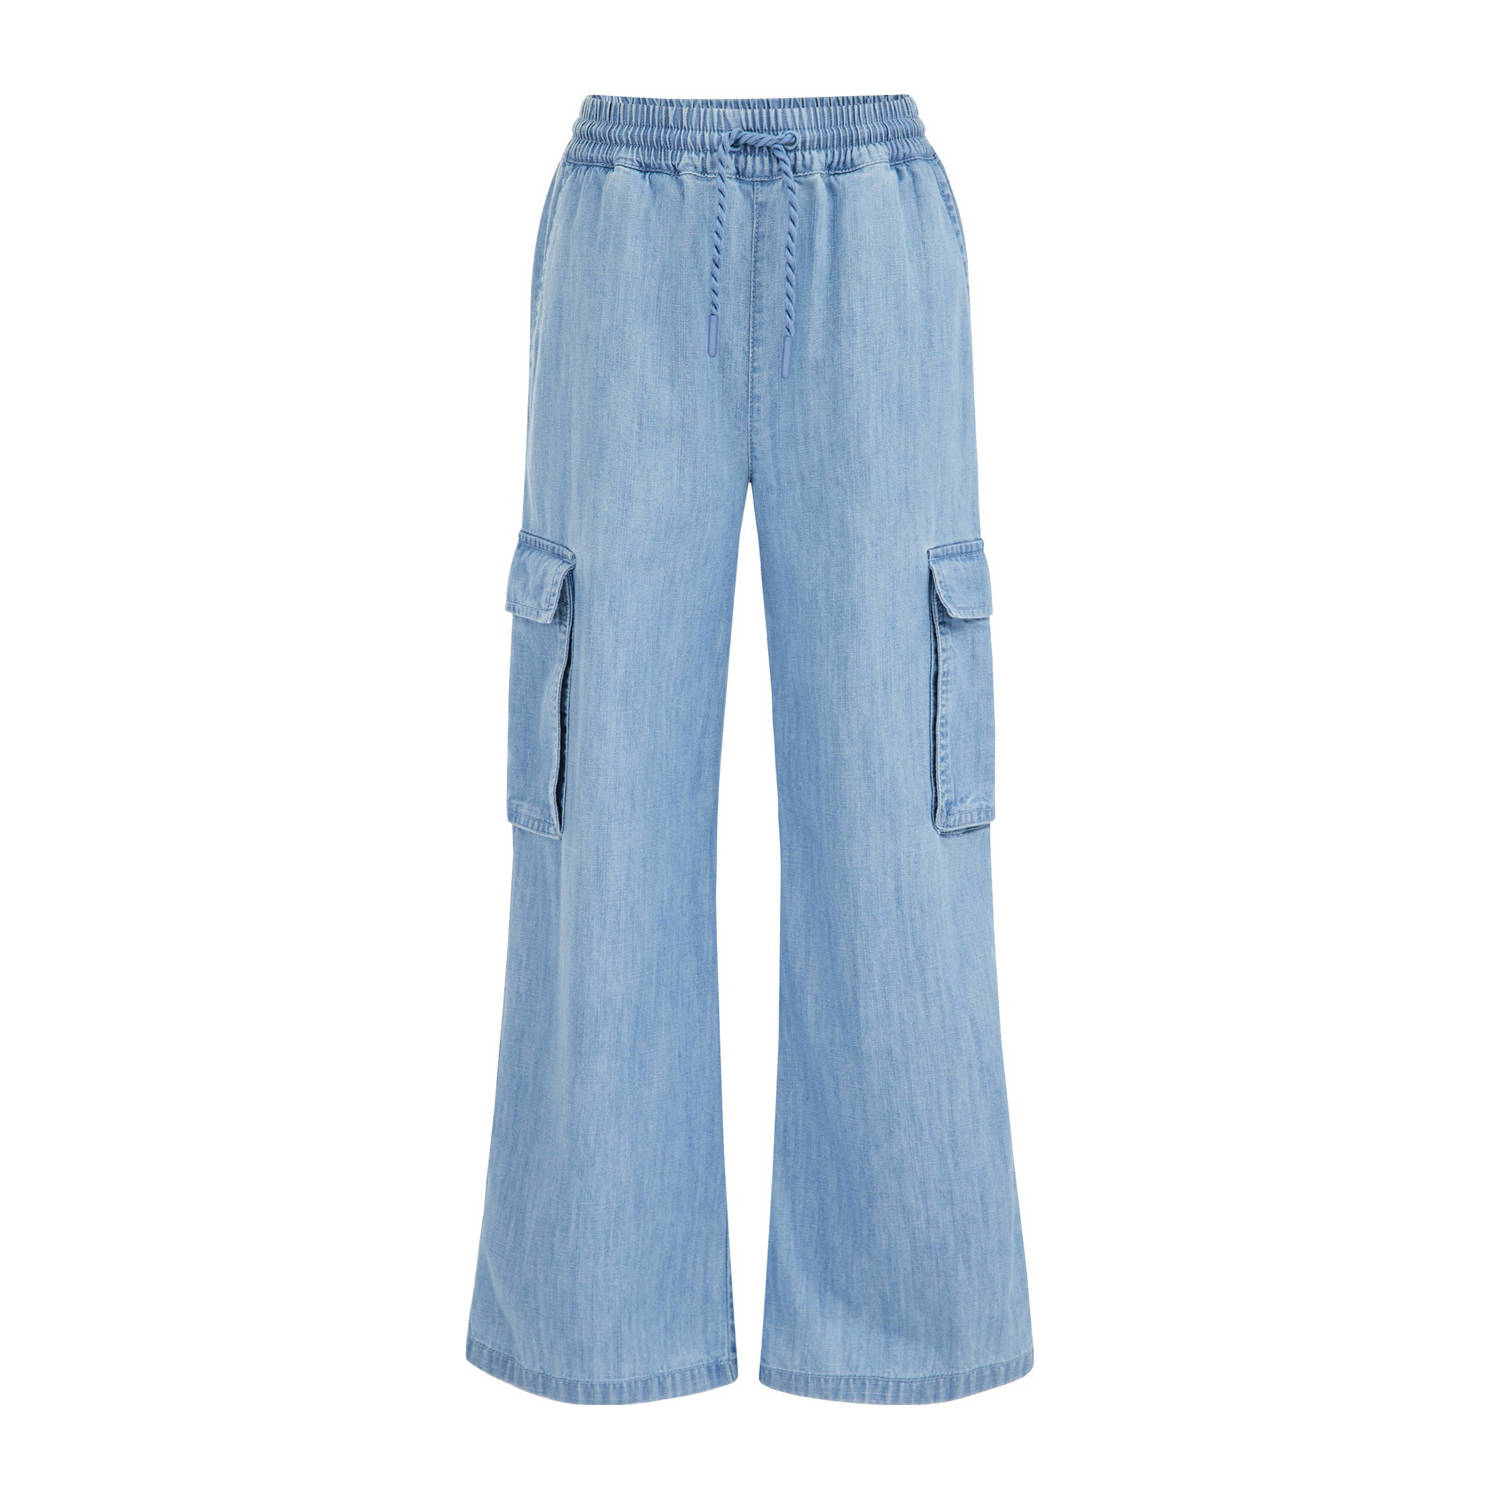 WE Fashion Blue Ridge wide leg jeans blue denim Broek Blauw Meisjes Katoen 104